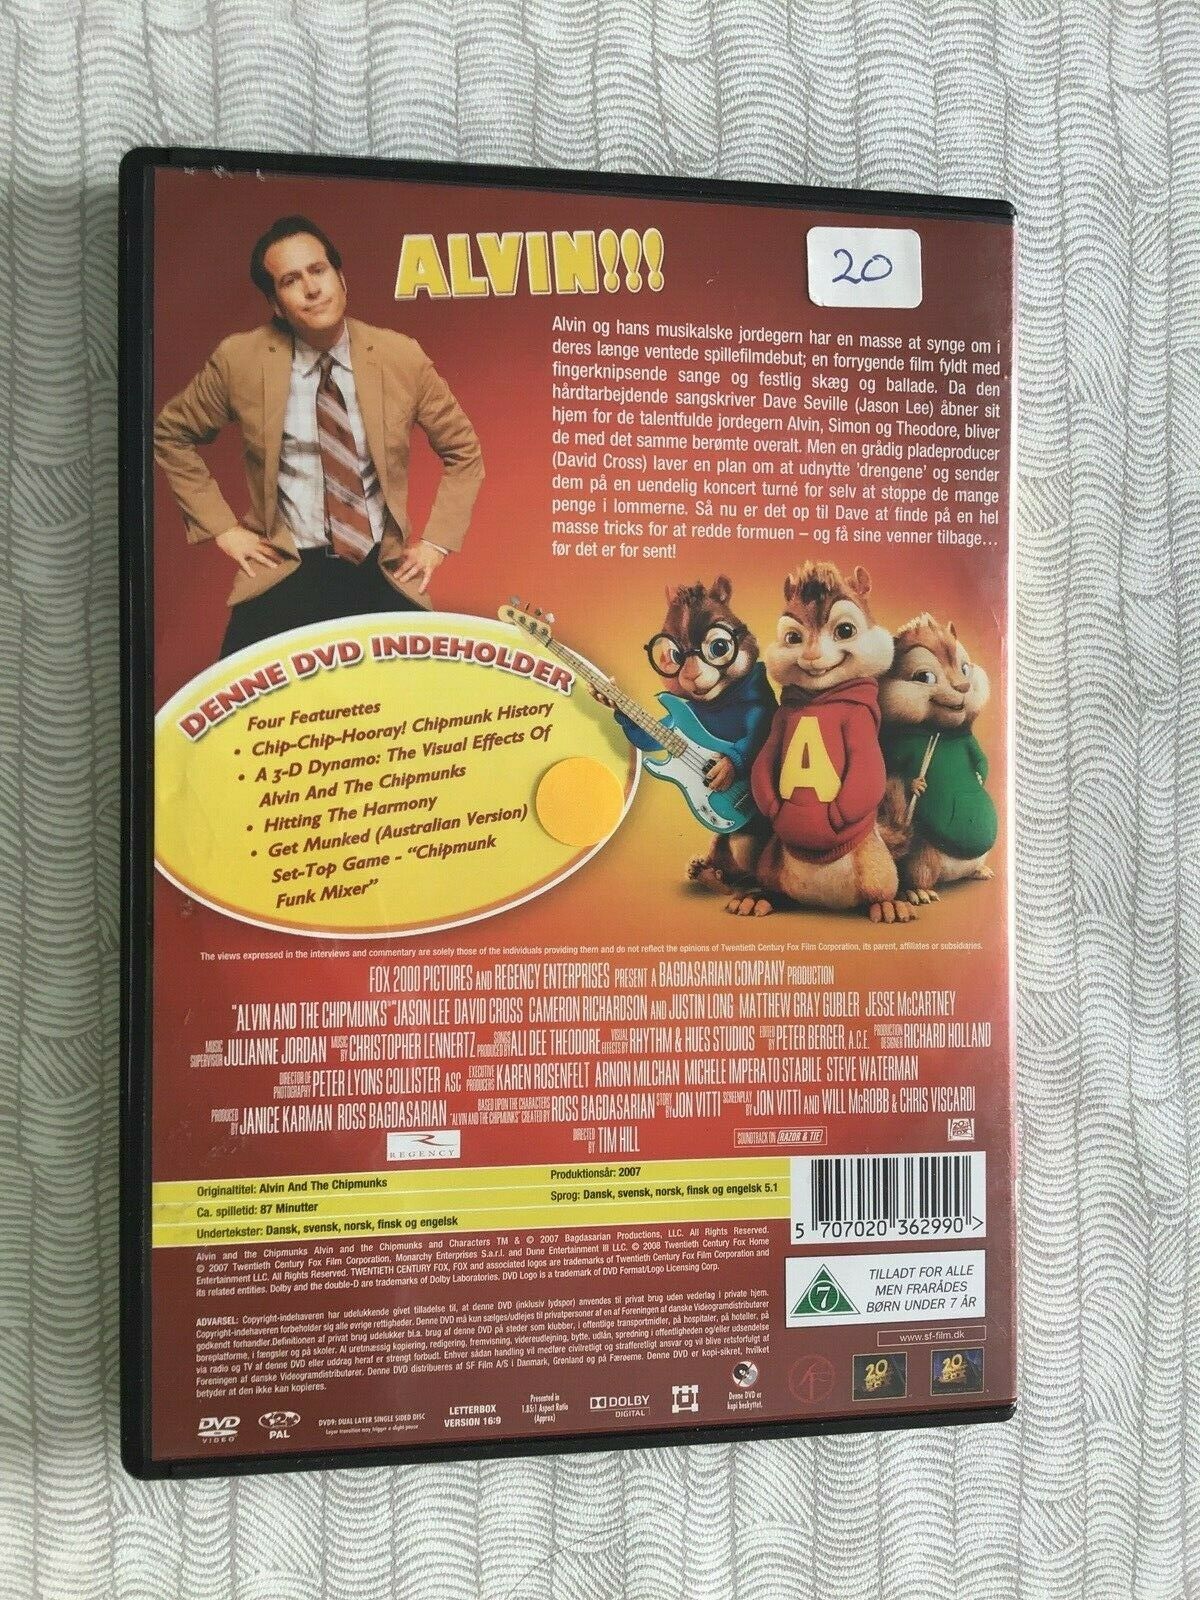 Alvin og de frække jordegern , DVD, animation